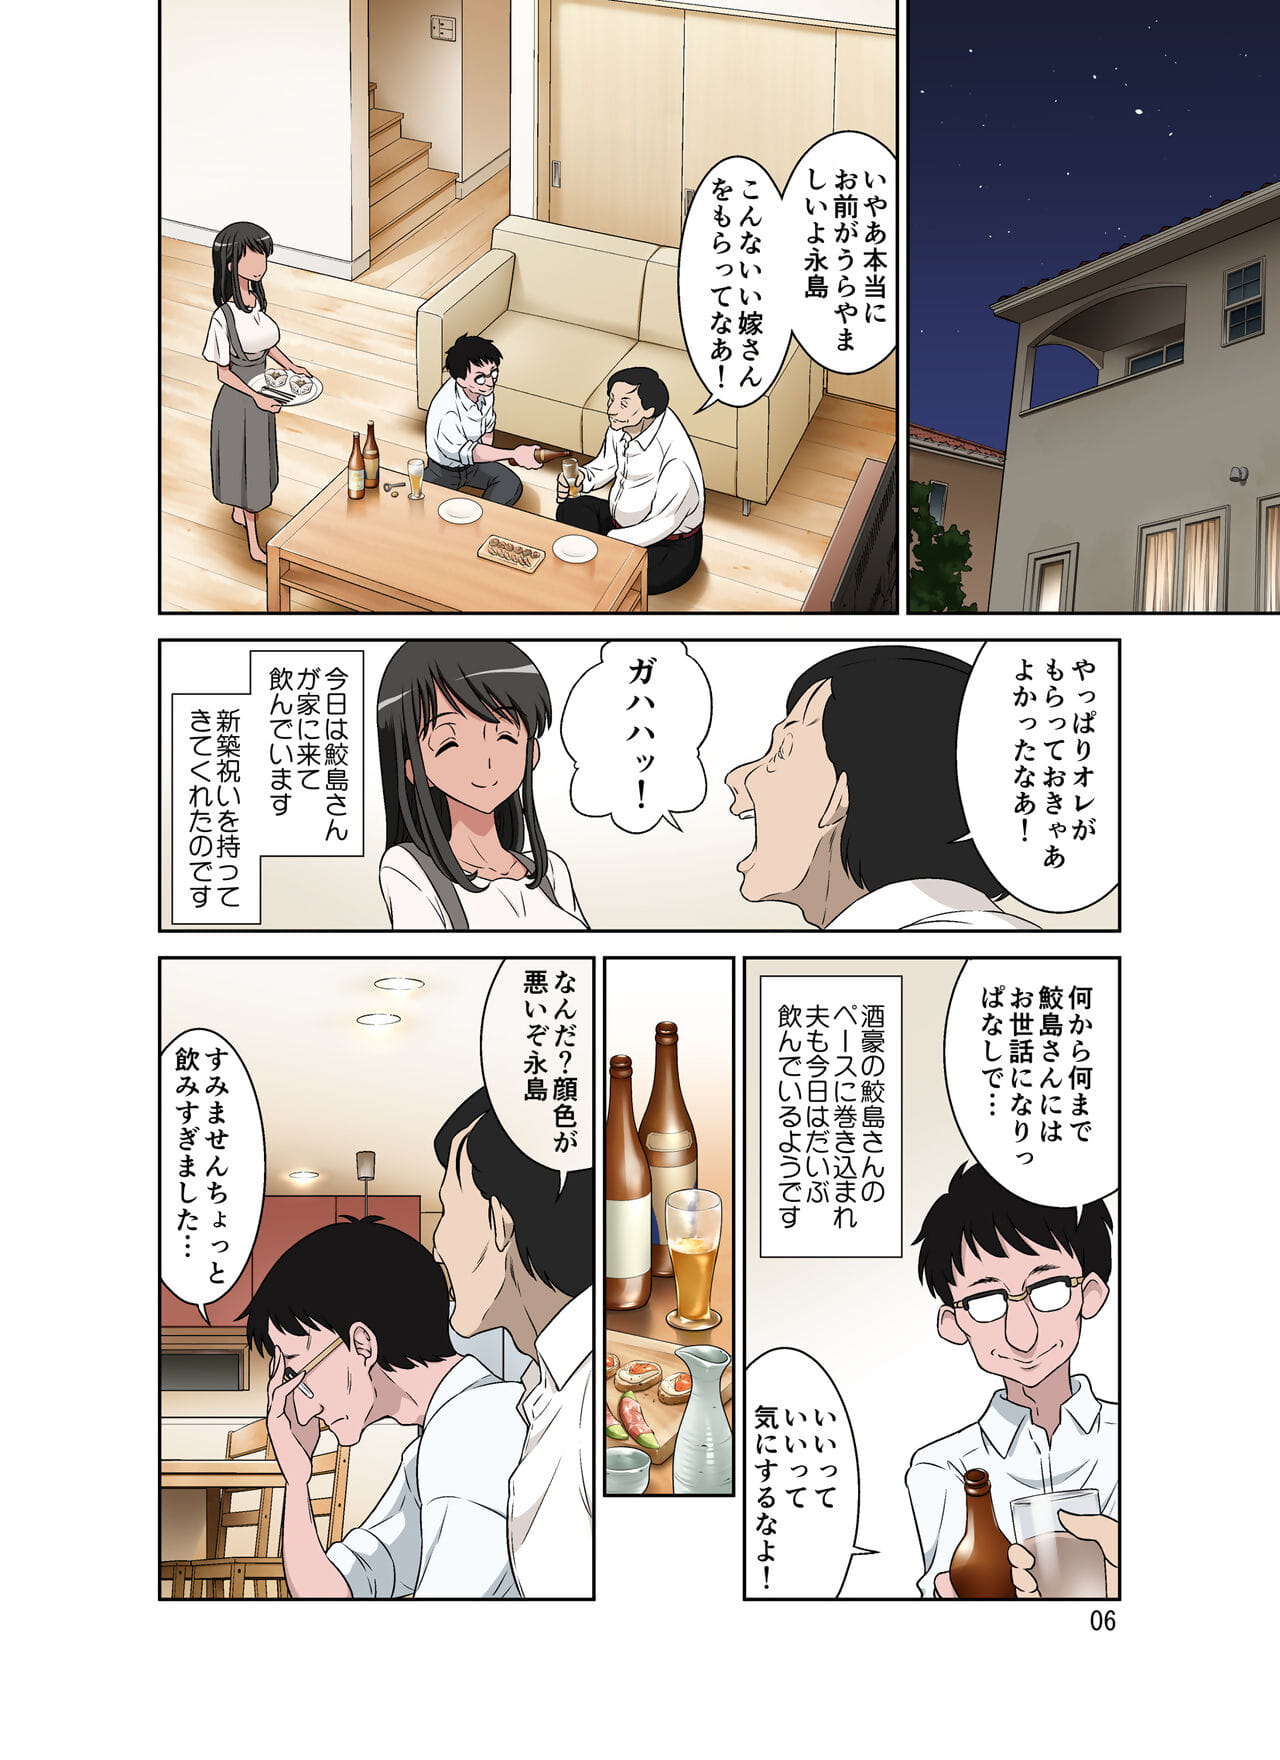 Samejima Shachou wa Keisanpu ga Osuki - part 2 page 1